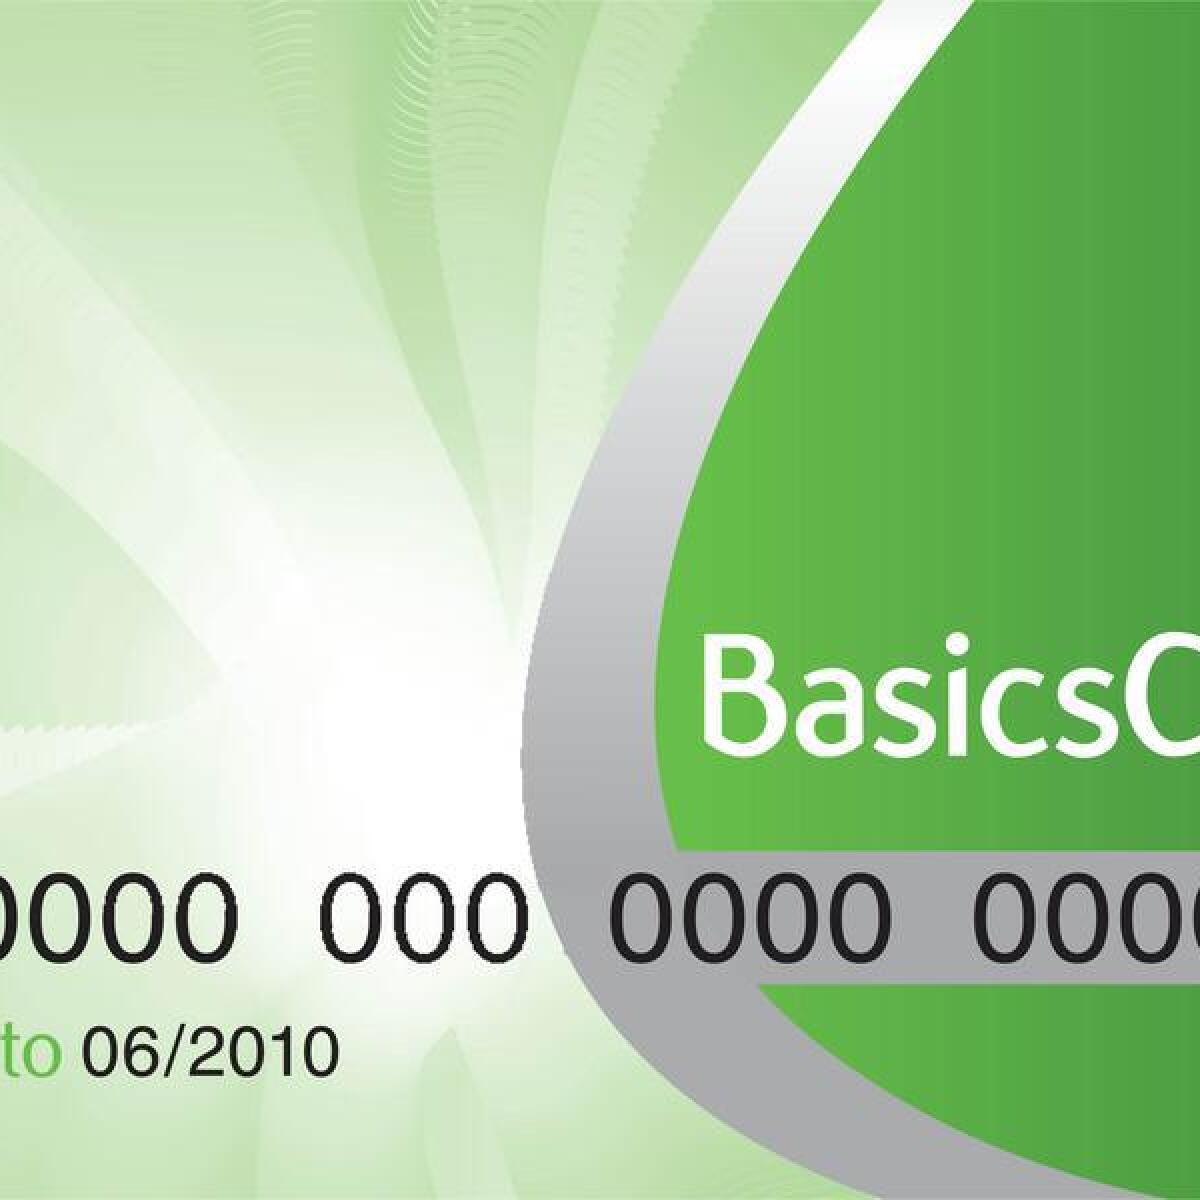 An example of a cashless welfare BasicsCard.